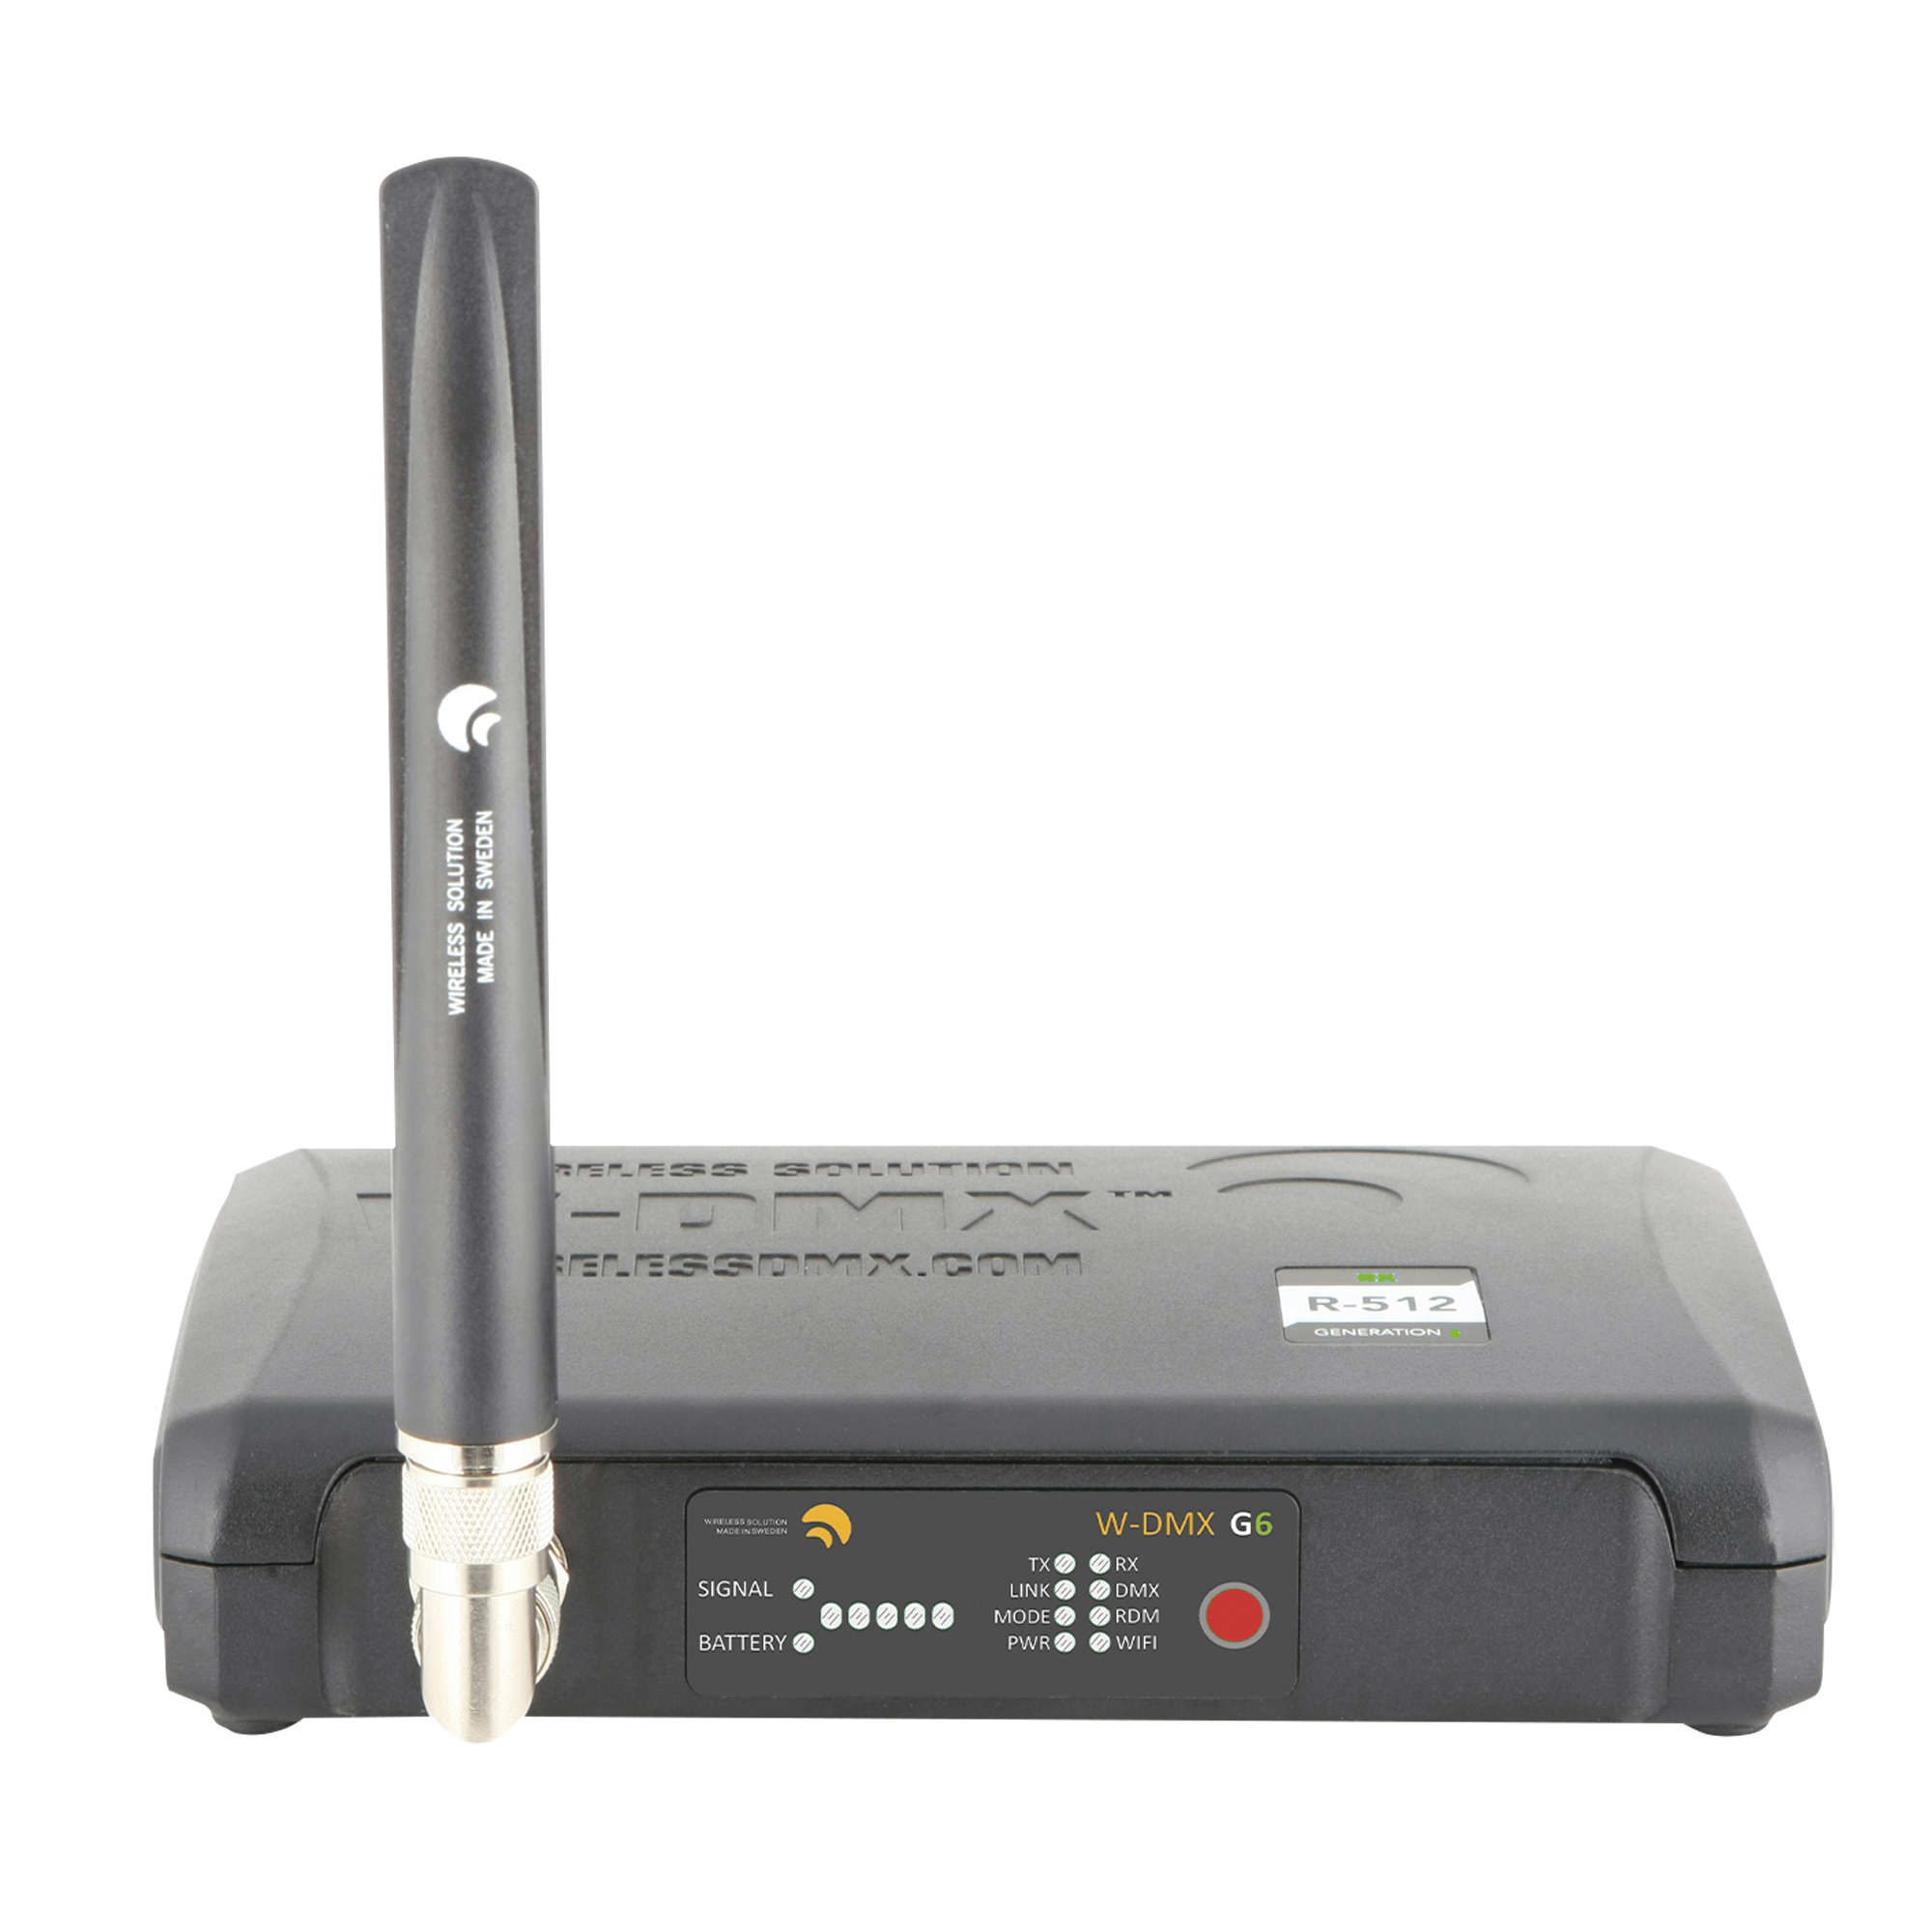 Wireless solution BlackBox R-512 G6 Receiver Drahtloser DMX, ArtNet & Streaming ACN-Empfänger